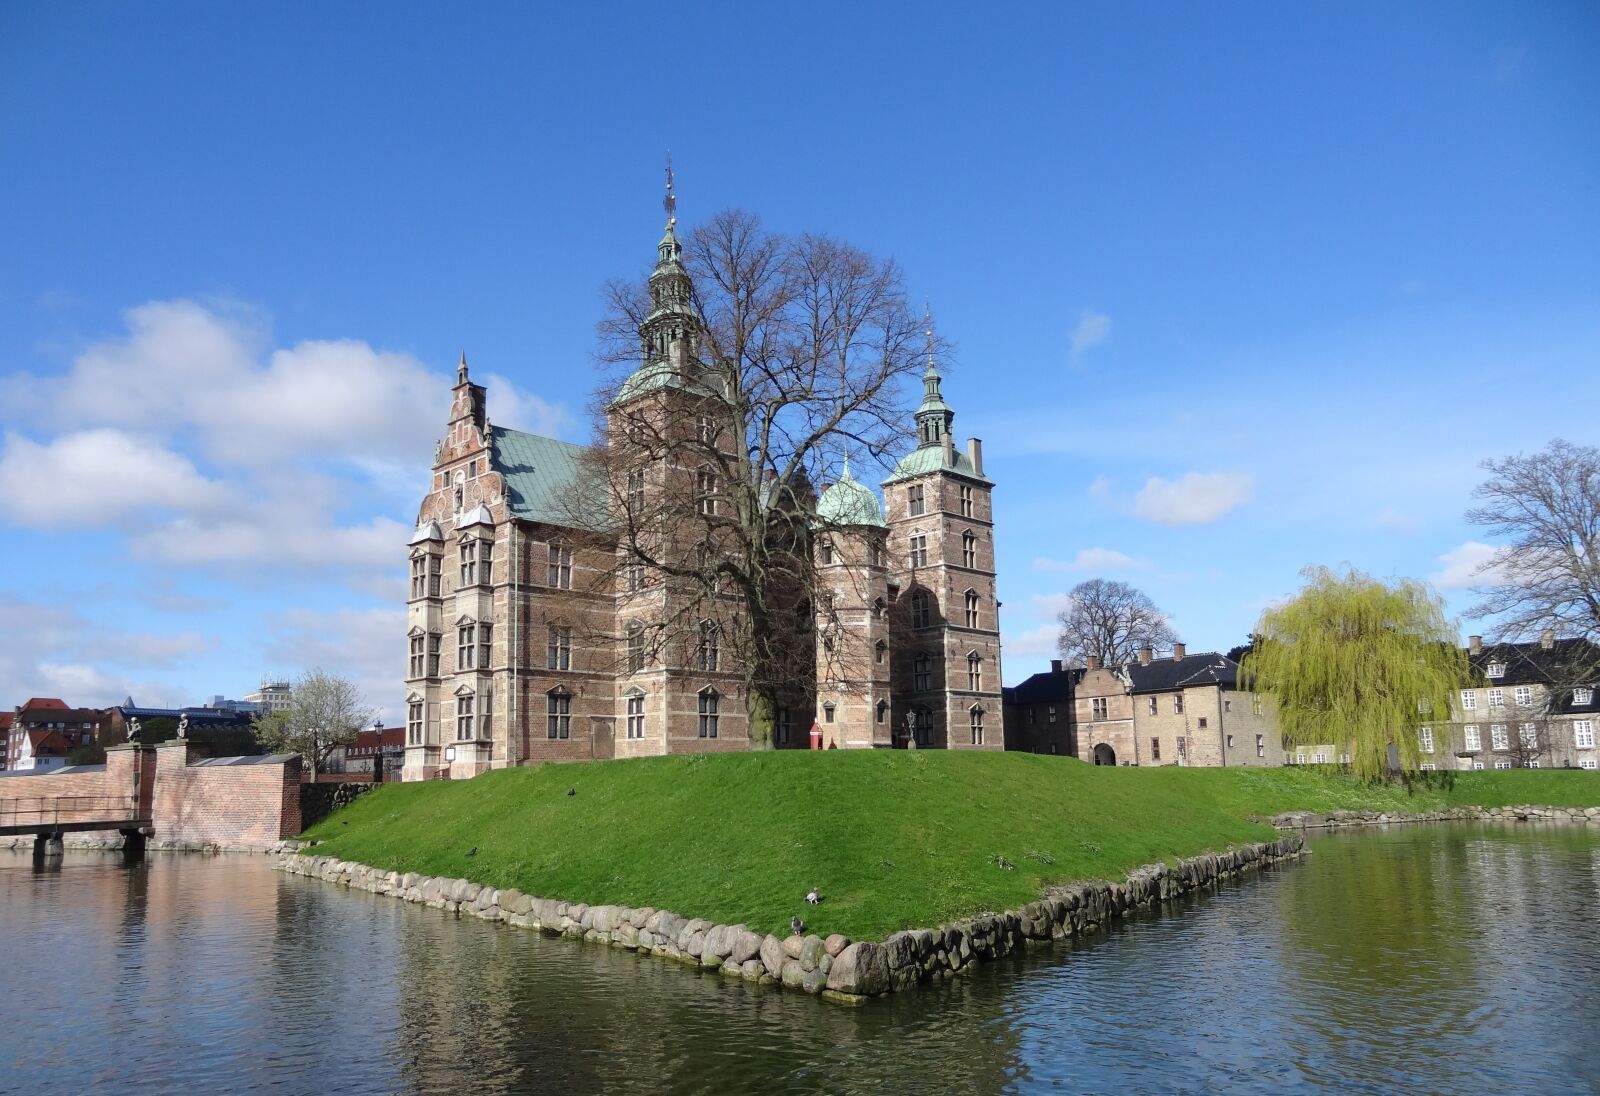 Sony Cyber-shot DSC-HX10V sample photo. Rosenborg castle, copenhagen, denmark photography